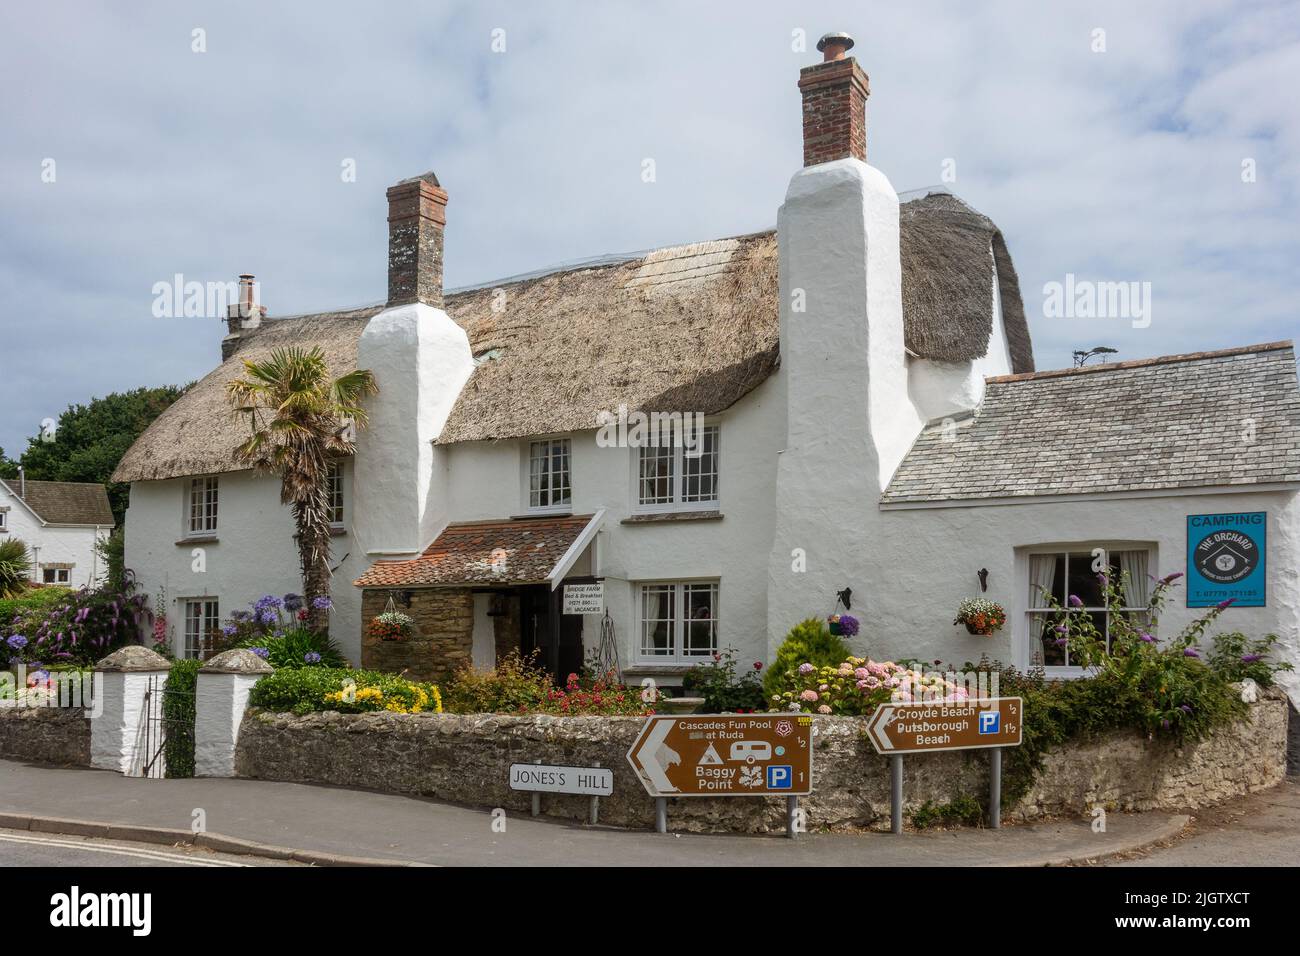 Angleterre, Devon, village de Croyde, maison de chaume Banque D'Images